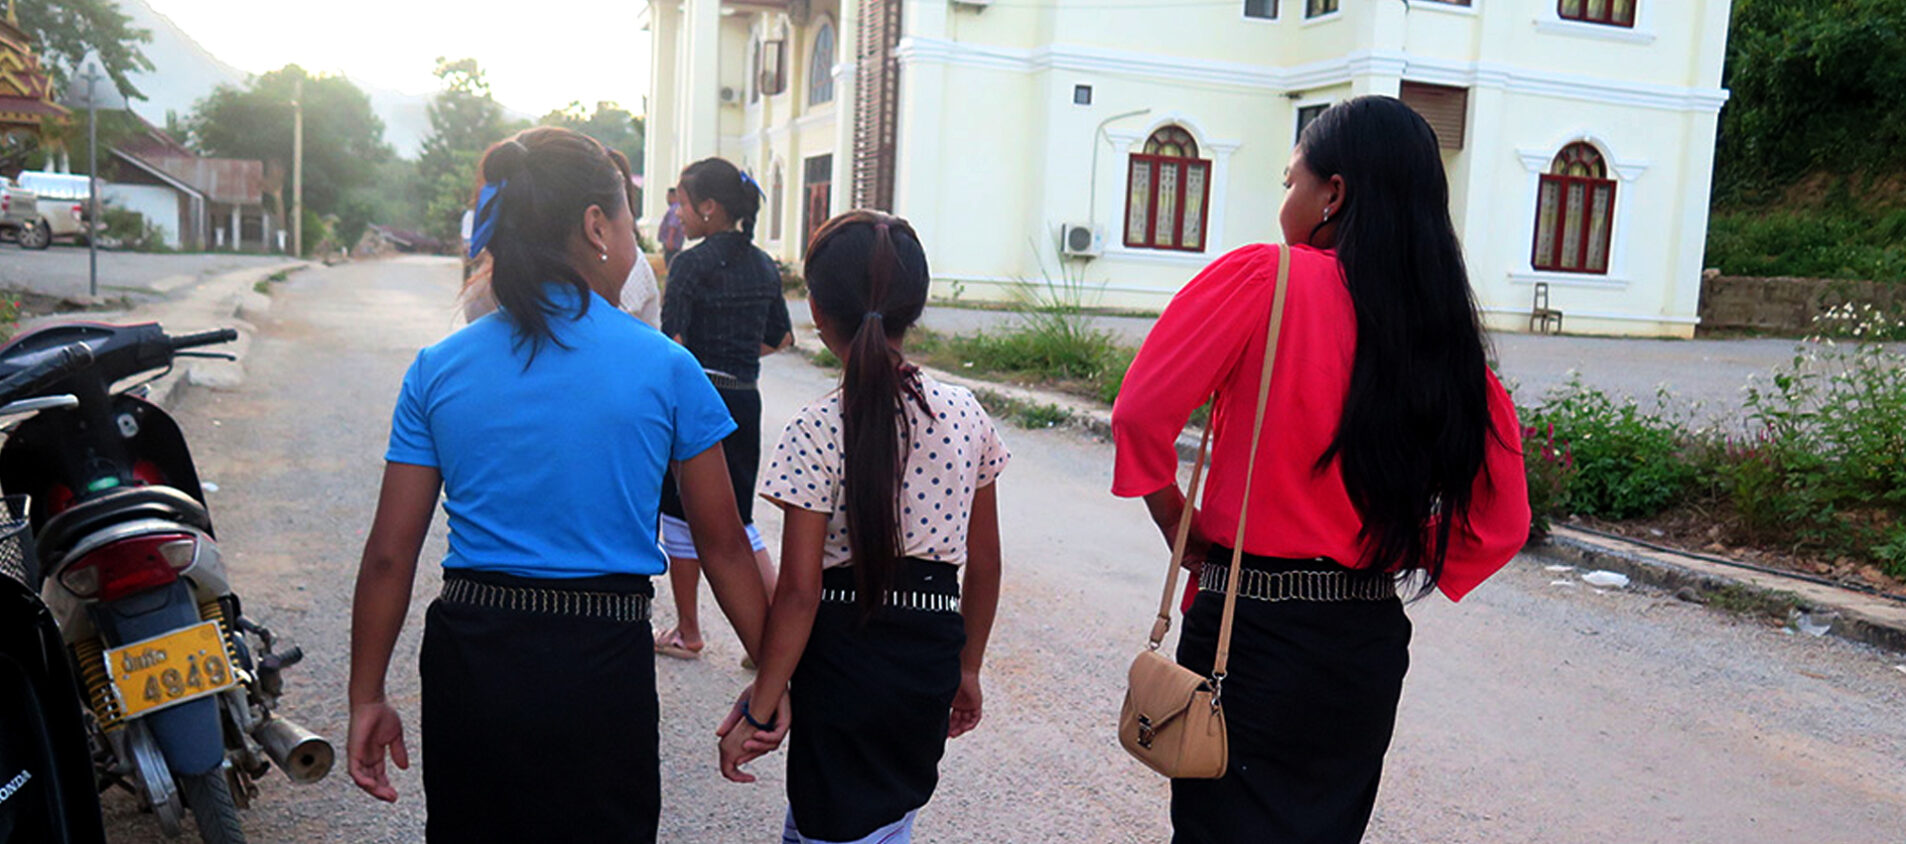 Elever i Laos på väg hem efter skoldagen.